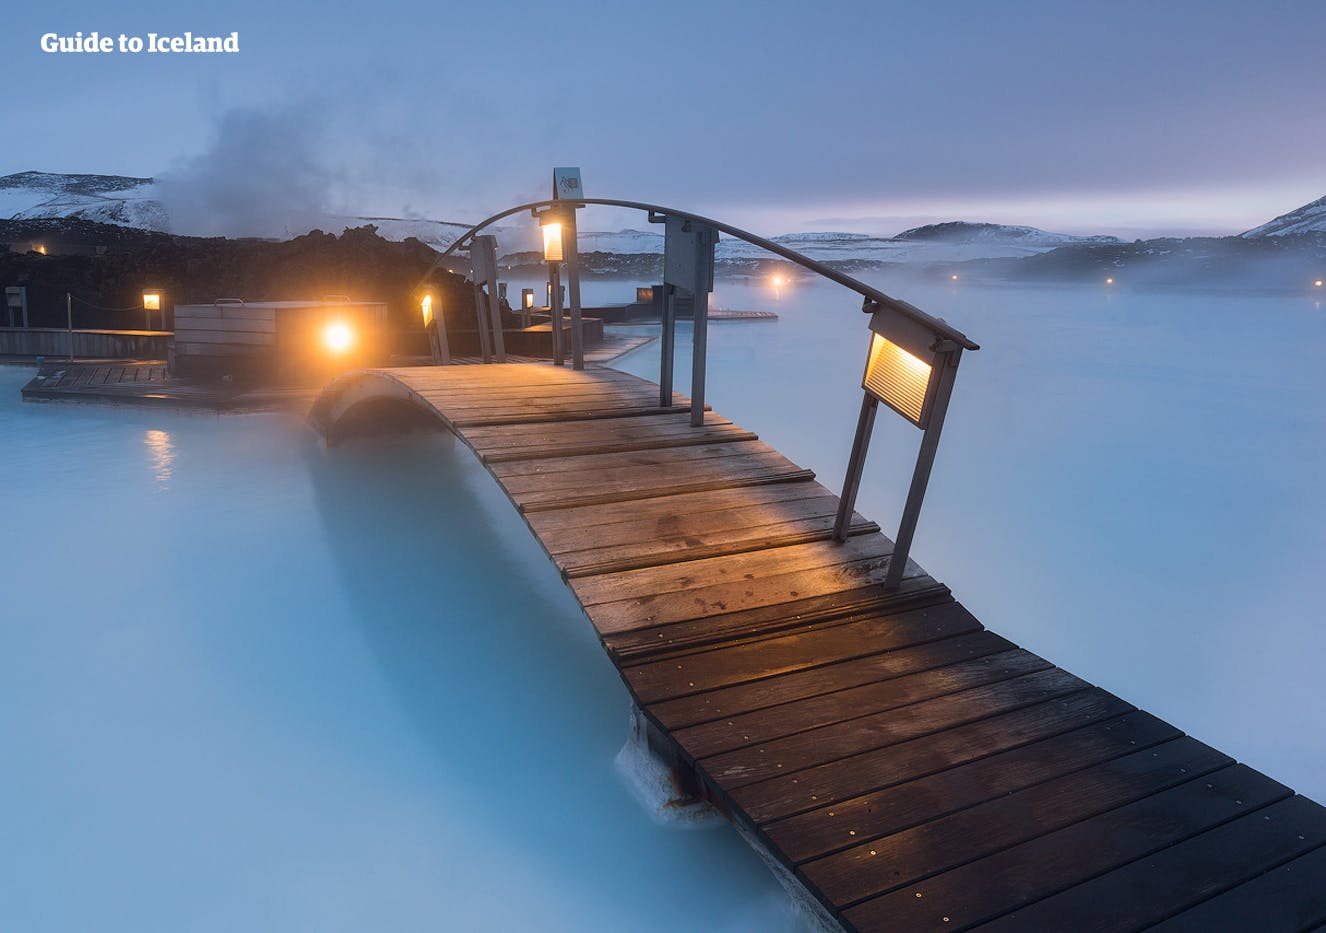 Poco dopo l'atterraggio in Islanda, puoi visitare la Laguna Blu e rilassarti nell'acqua geotermica.